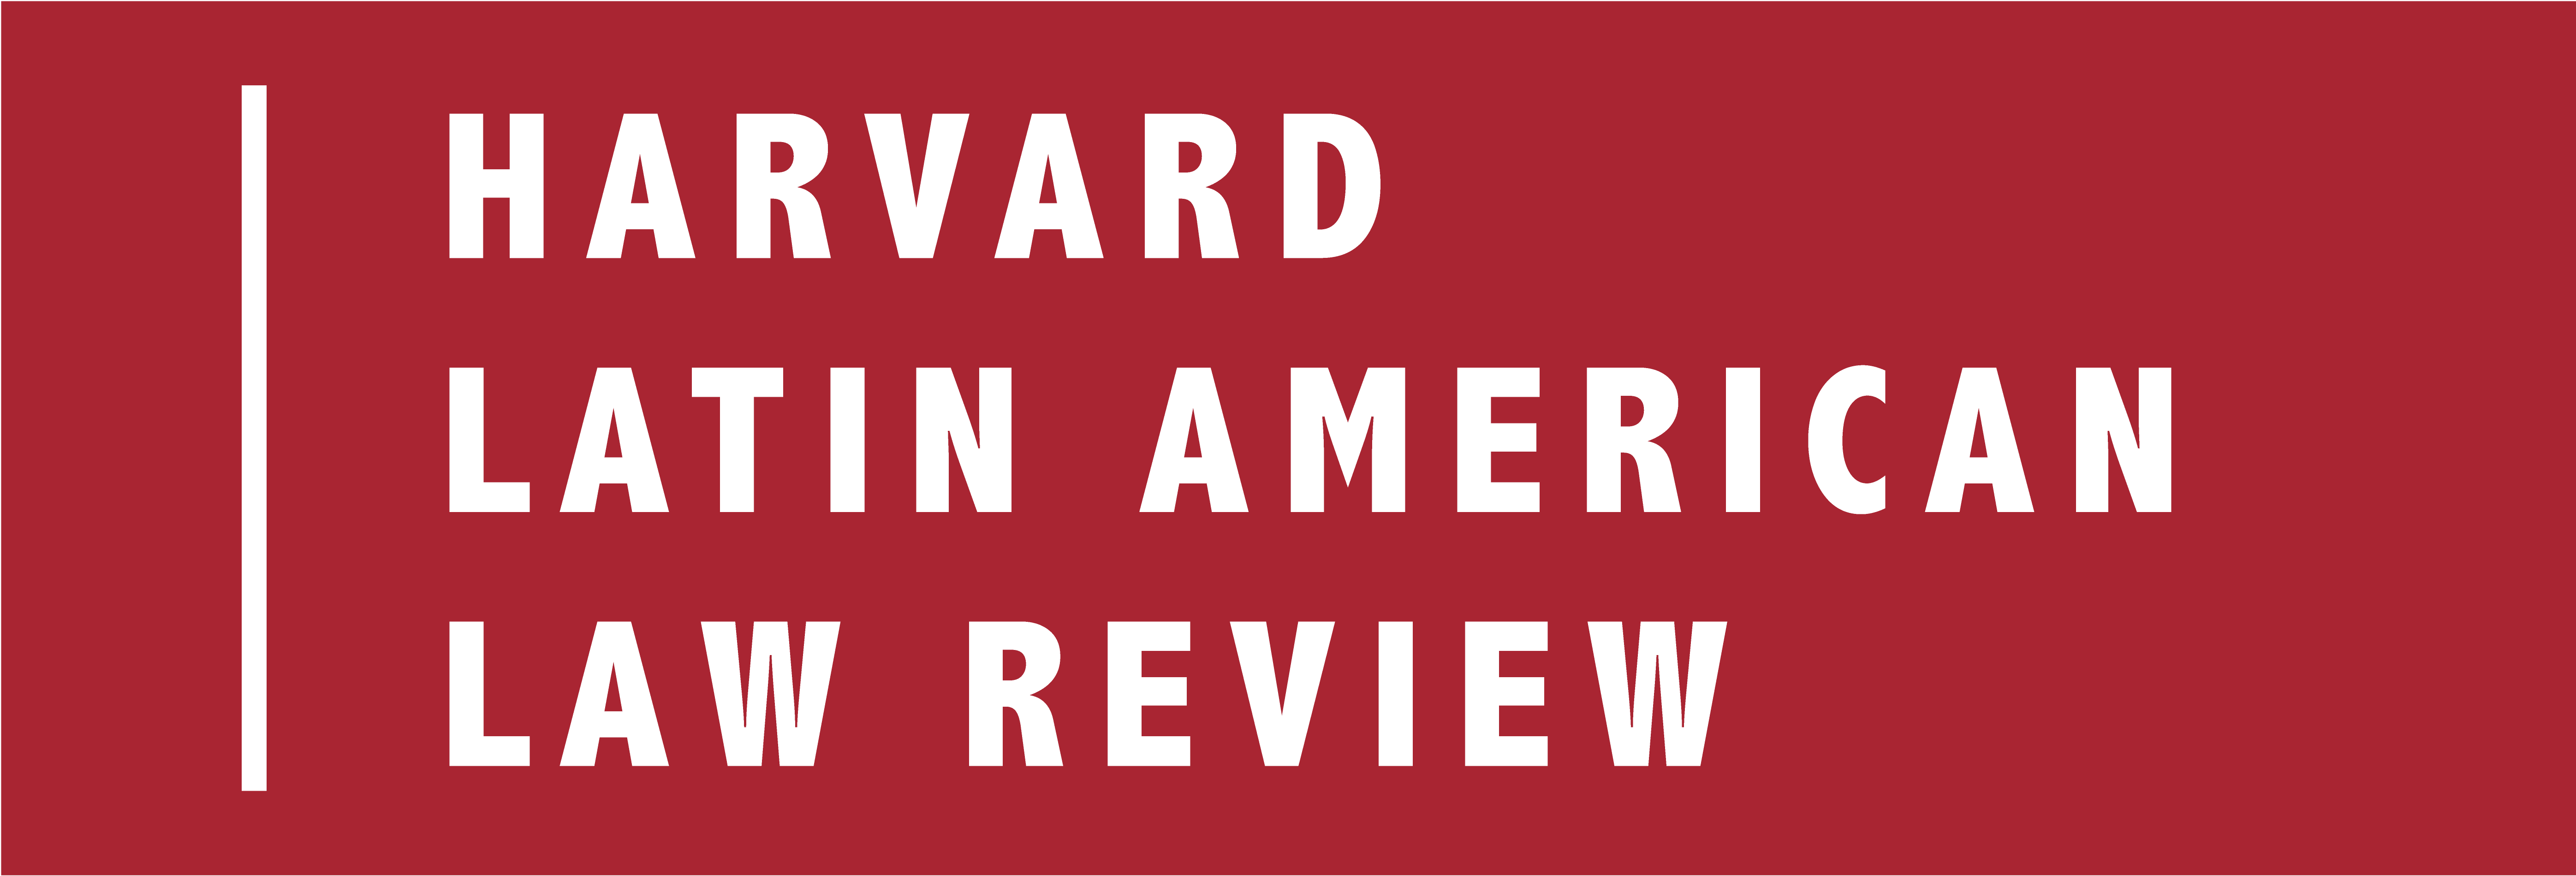 Harvard Latin American Law Review